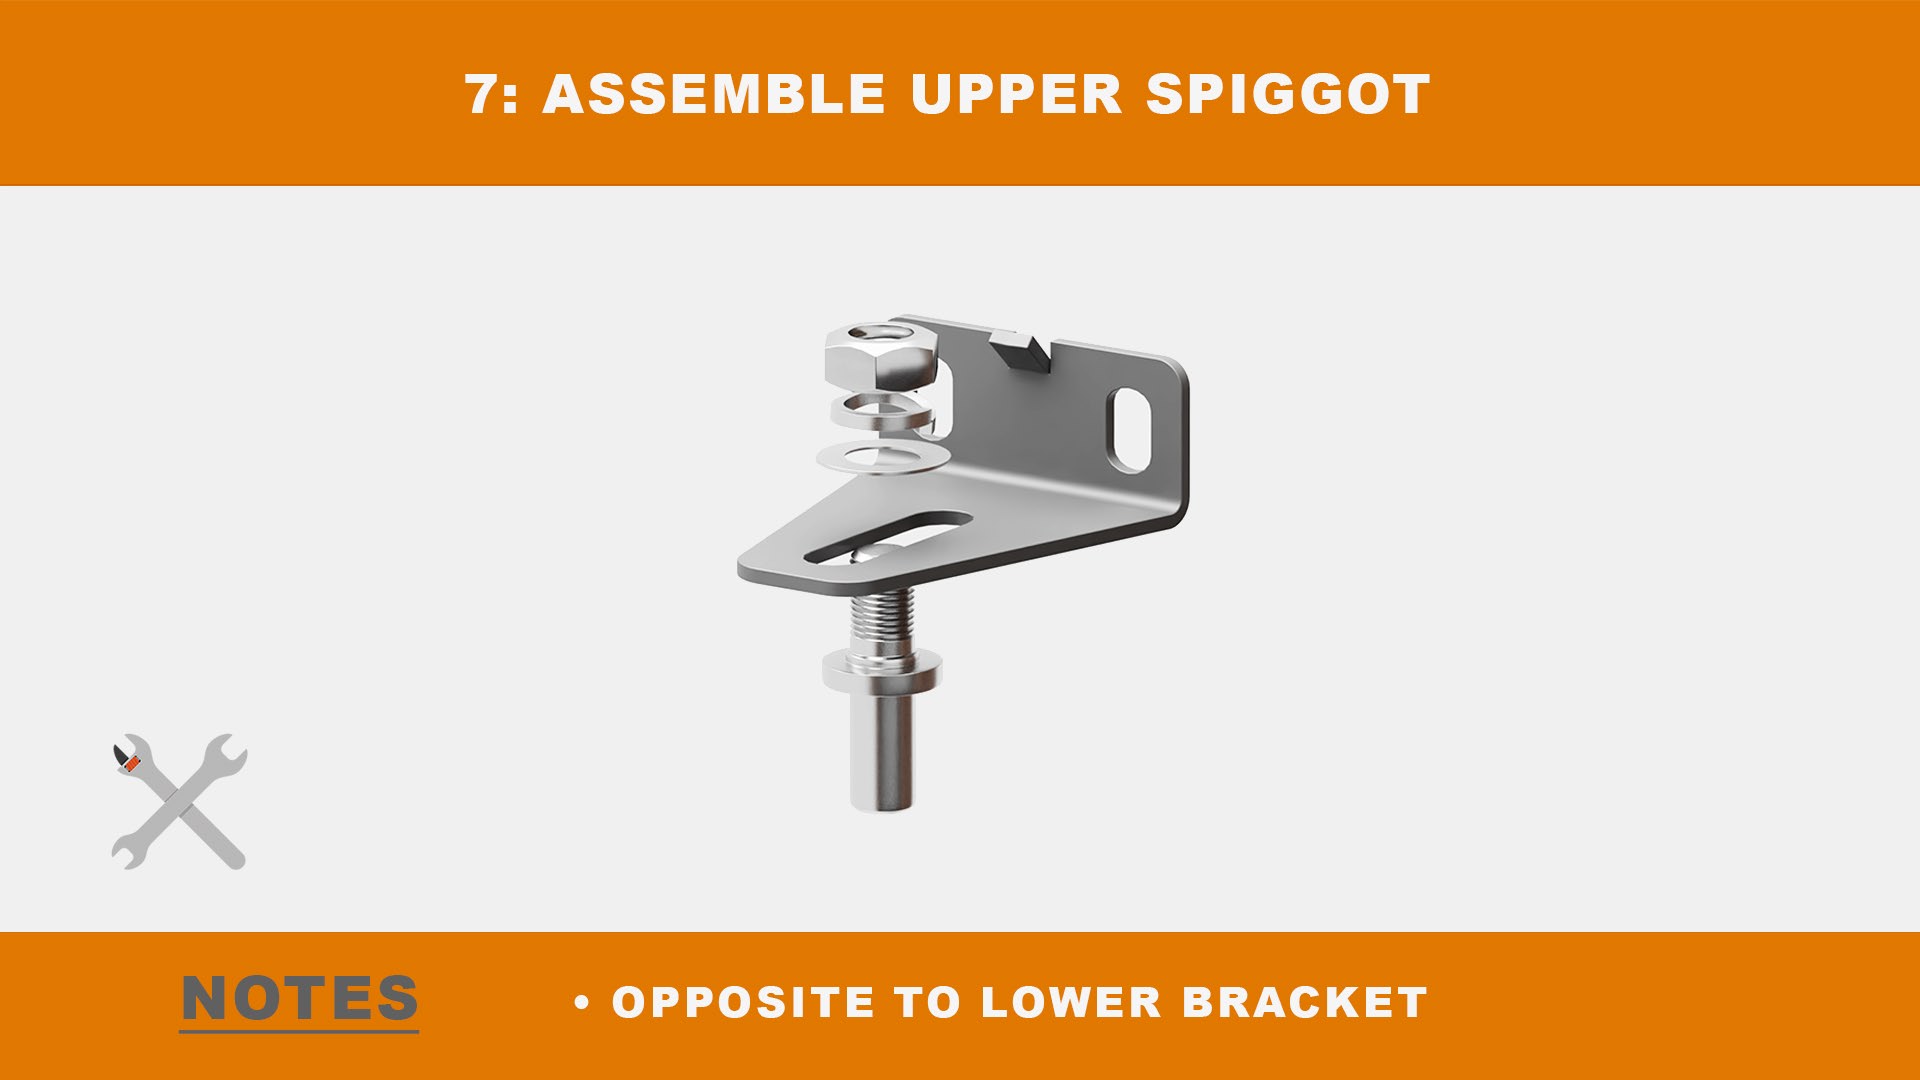 Assemble upper spigot